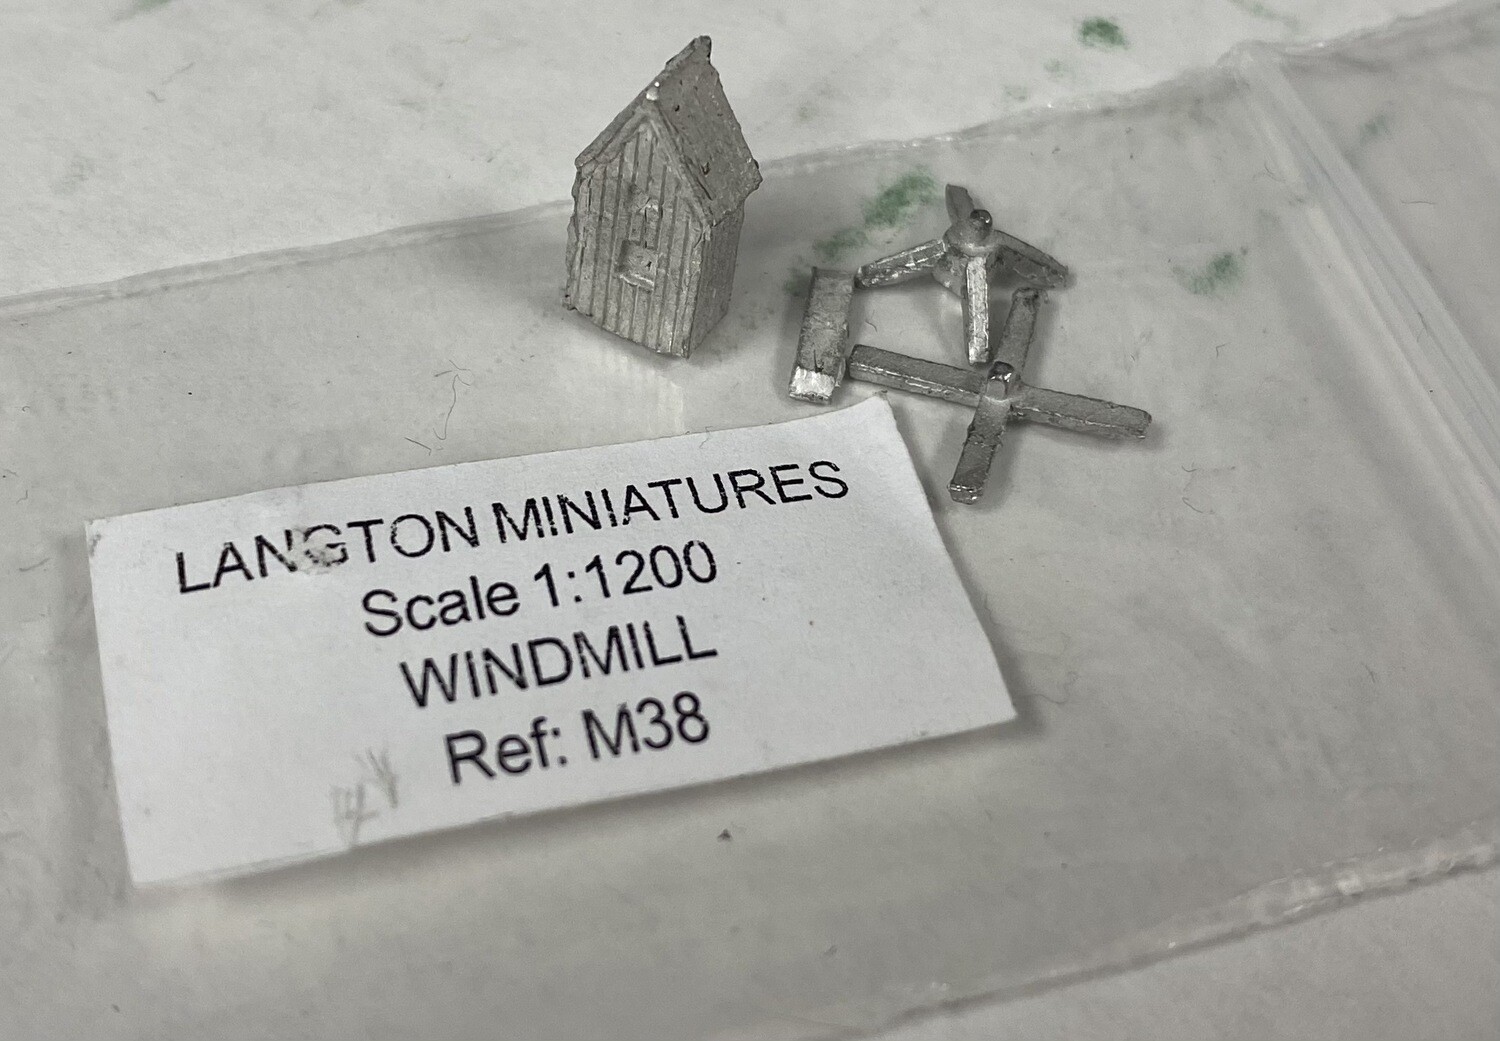 M38 Windmill (reqs assembly)